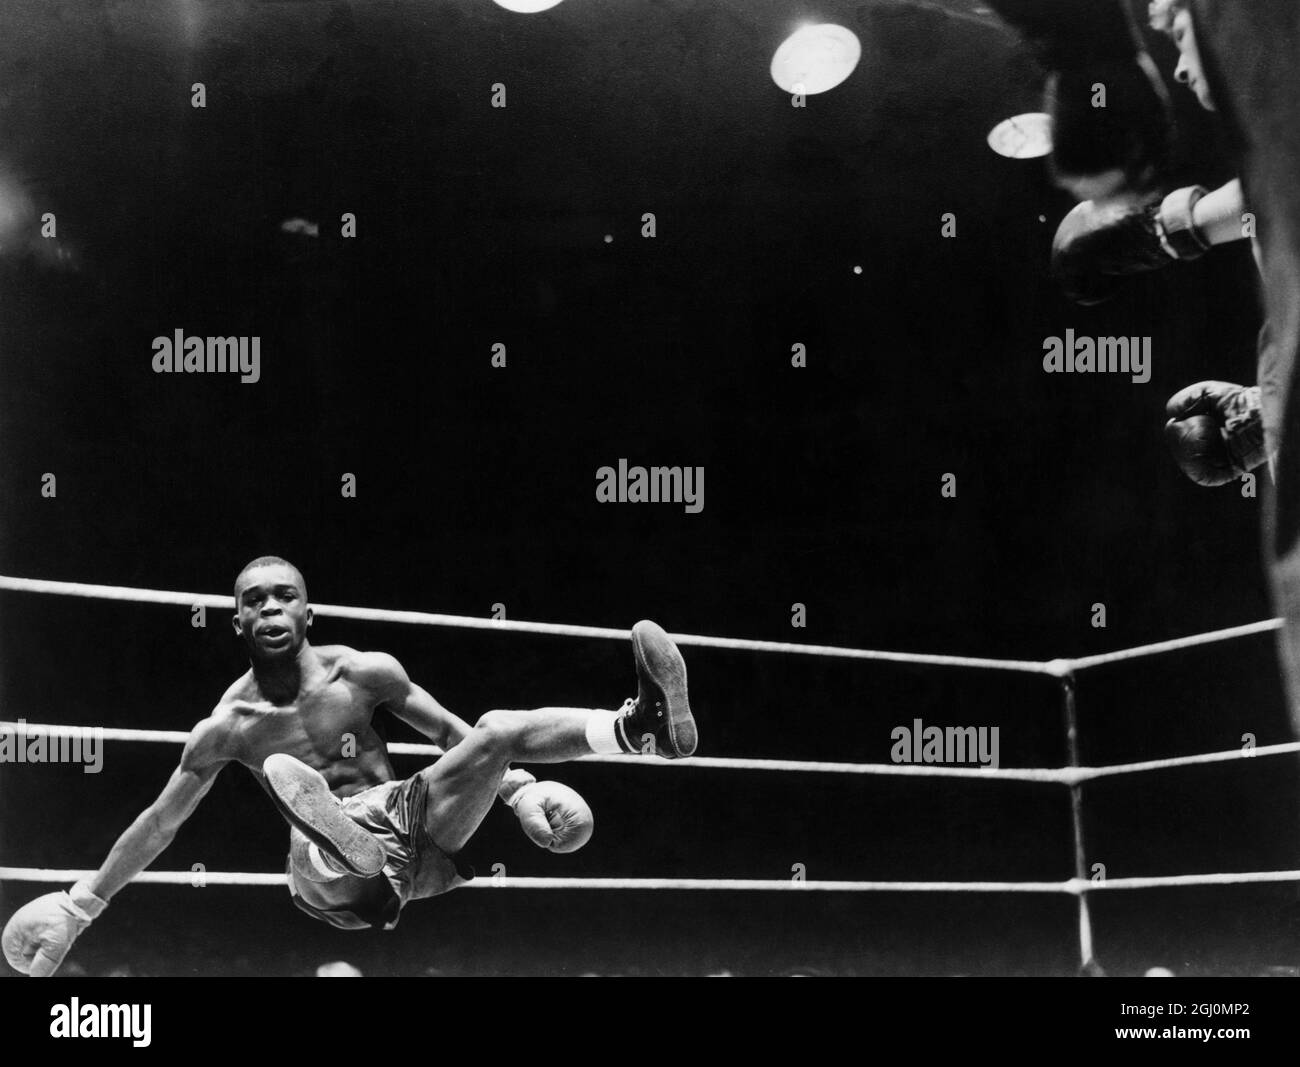 Boxen - Foto mit der größten Leichtigkeit von Chester Gabrysiak betitelt Stockfoto